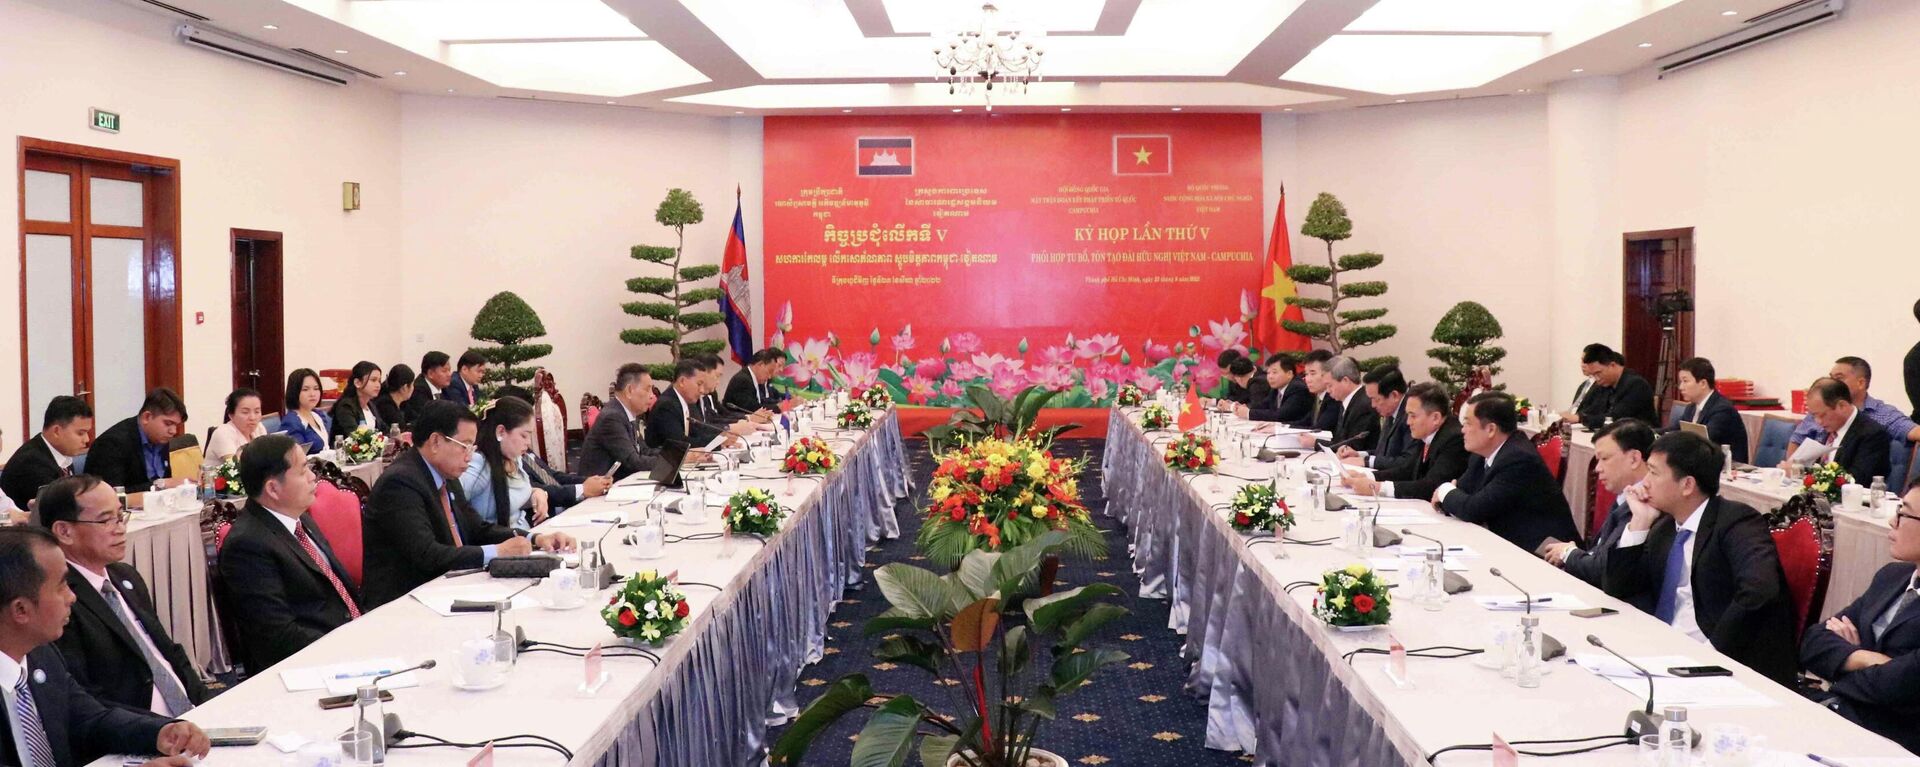 Kỳ họp lần thứ V giữa Bộ Quốc phòng Việt Nam với Hội đồng Quốc gia Mặt trận Đoàn kết phát triển Tổ quốc Campuchia - Sputnik Việt Nam, 1920, 23.08.2022